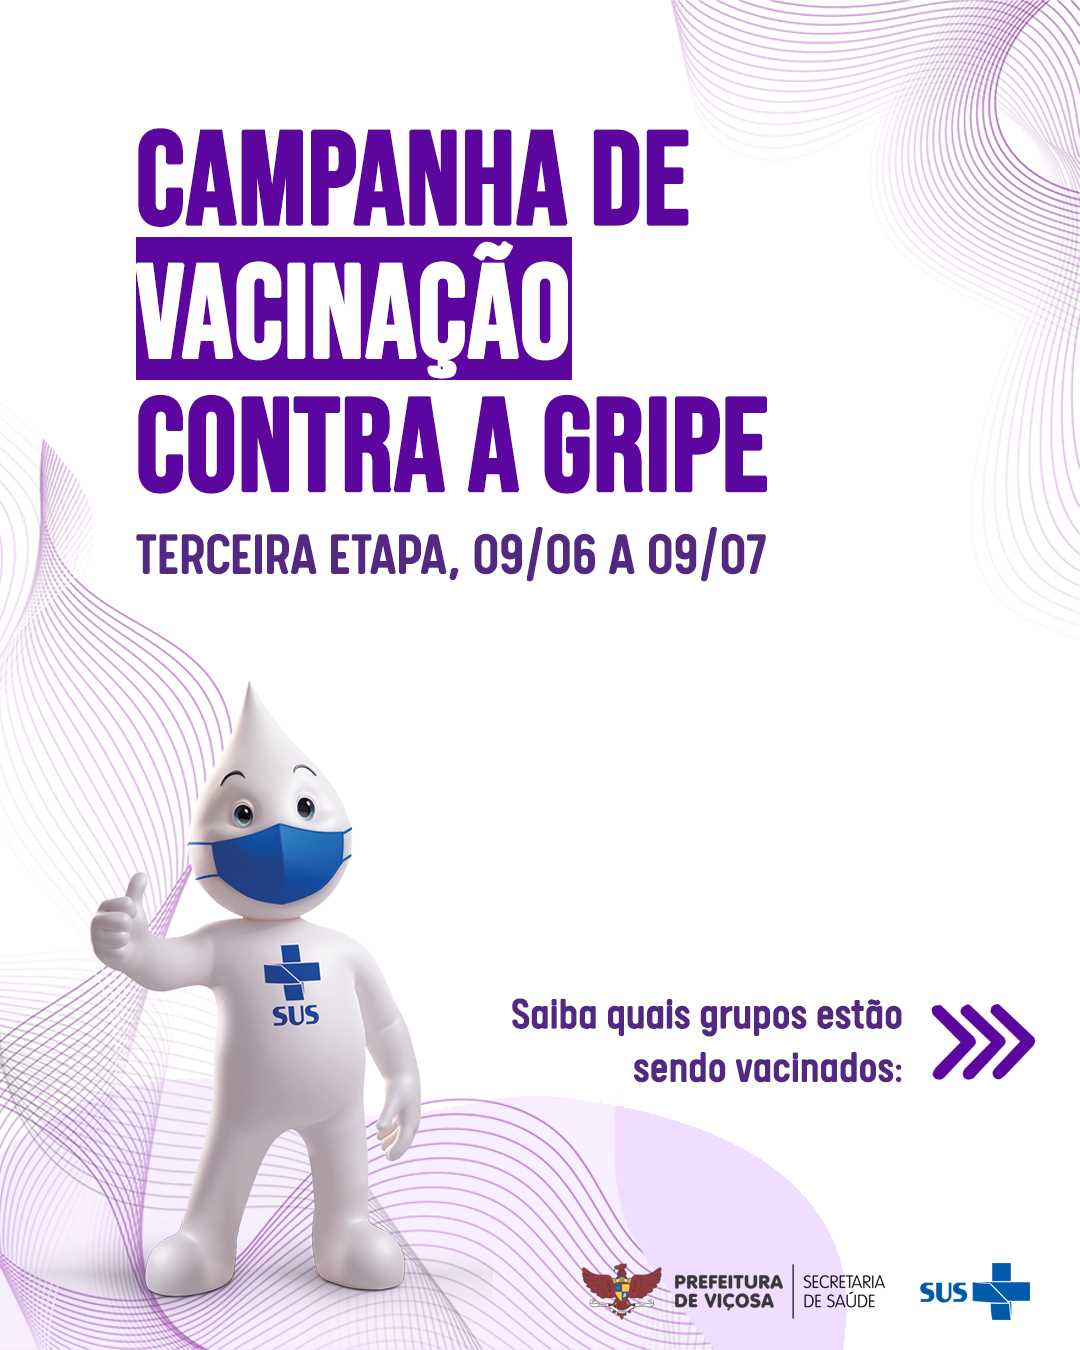 Terceira etapa de vacinação contra gripe começou nesta quarta-feira (09) em Viçosa